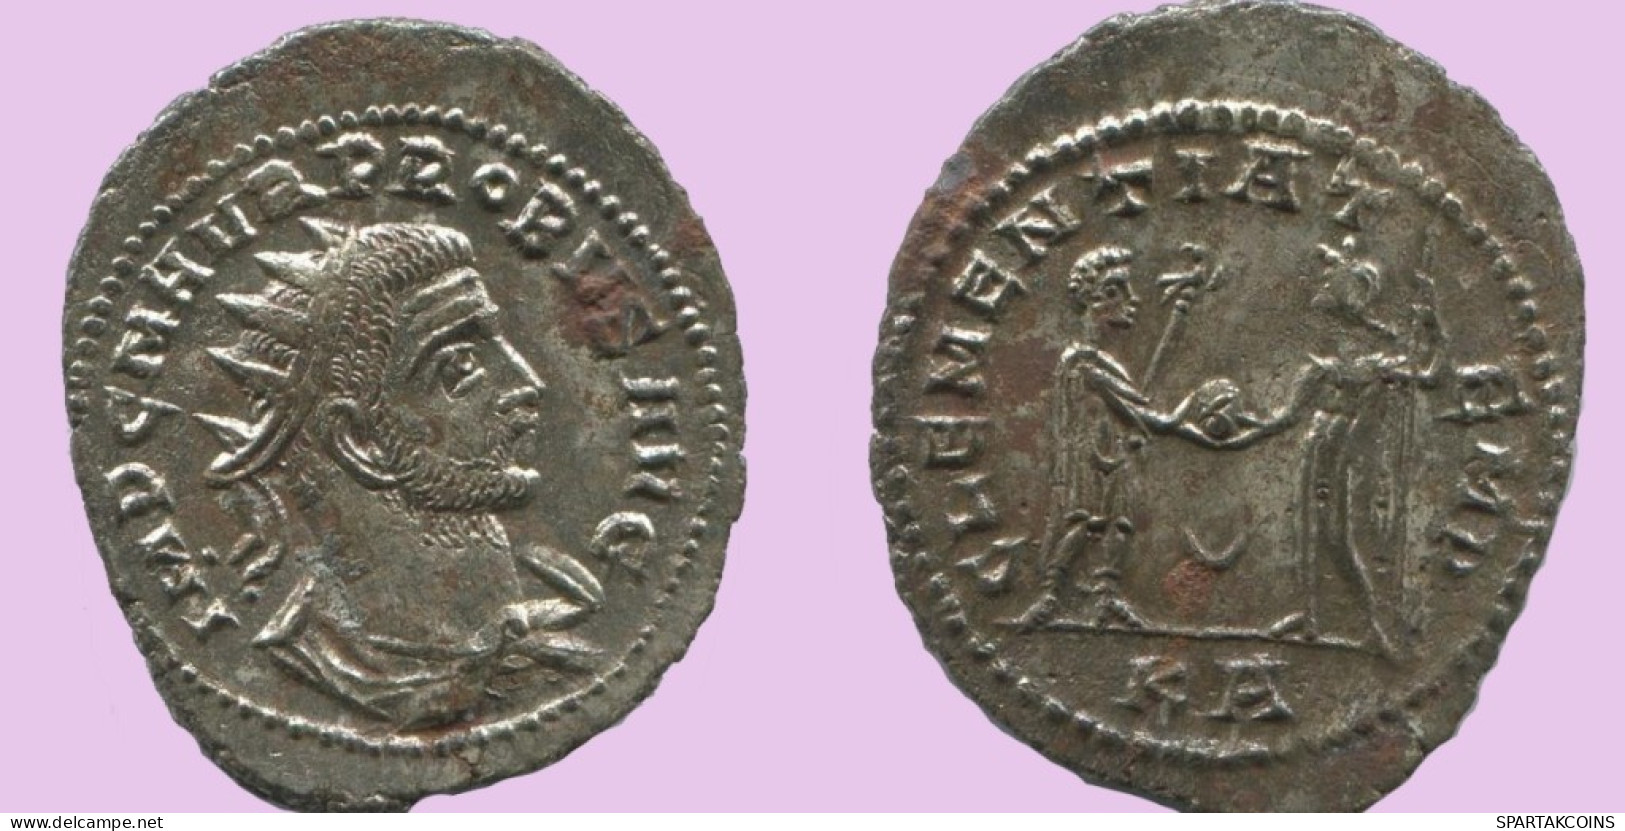 PROBUS ANTONINIANUS Tripolis (? / KA) AD 276 - 282 CLEMENTIA TEMP #ANT1903.48.E.A - The Military Crisis (235 AD To 284 AD)